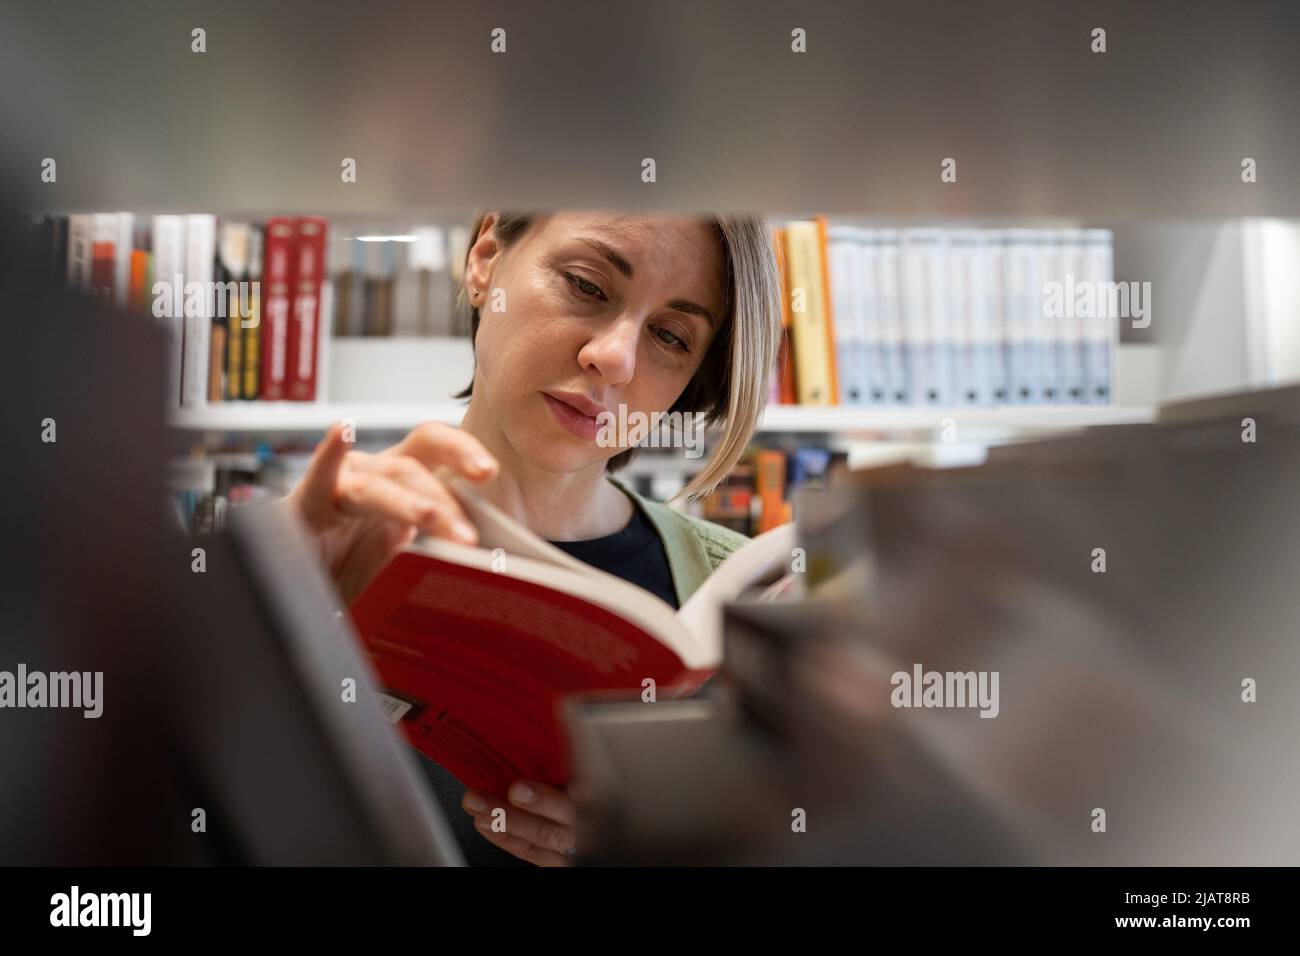 Skandinavische Frau mittleren Alters, die Lehrbuch wählt, auf der Suche nach Literatur während der Vorbereitung auf die Prüfung Stockfoto